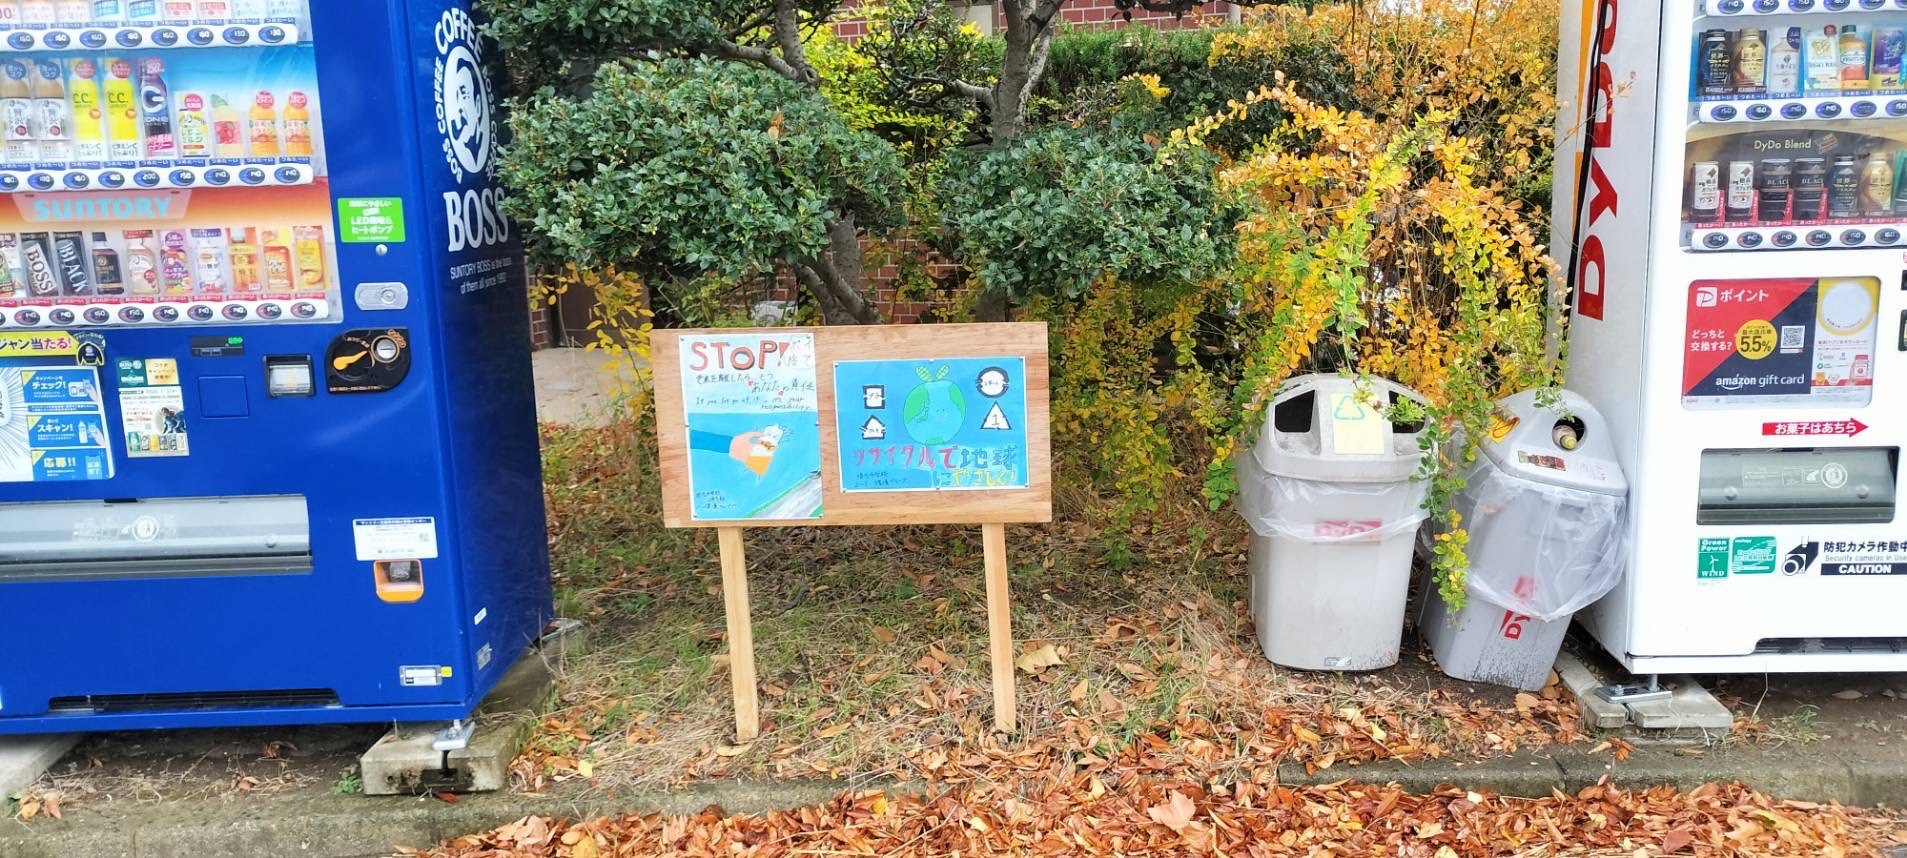 埴生中学生が作成した環境保全ポスターを公園内に掲示した写真